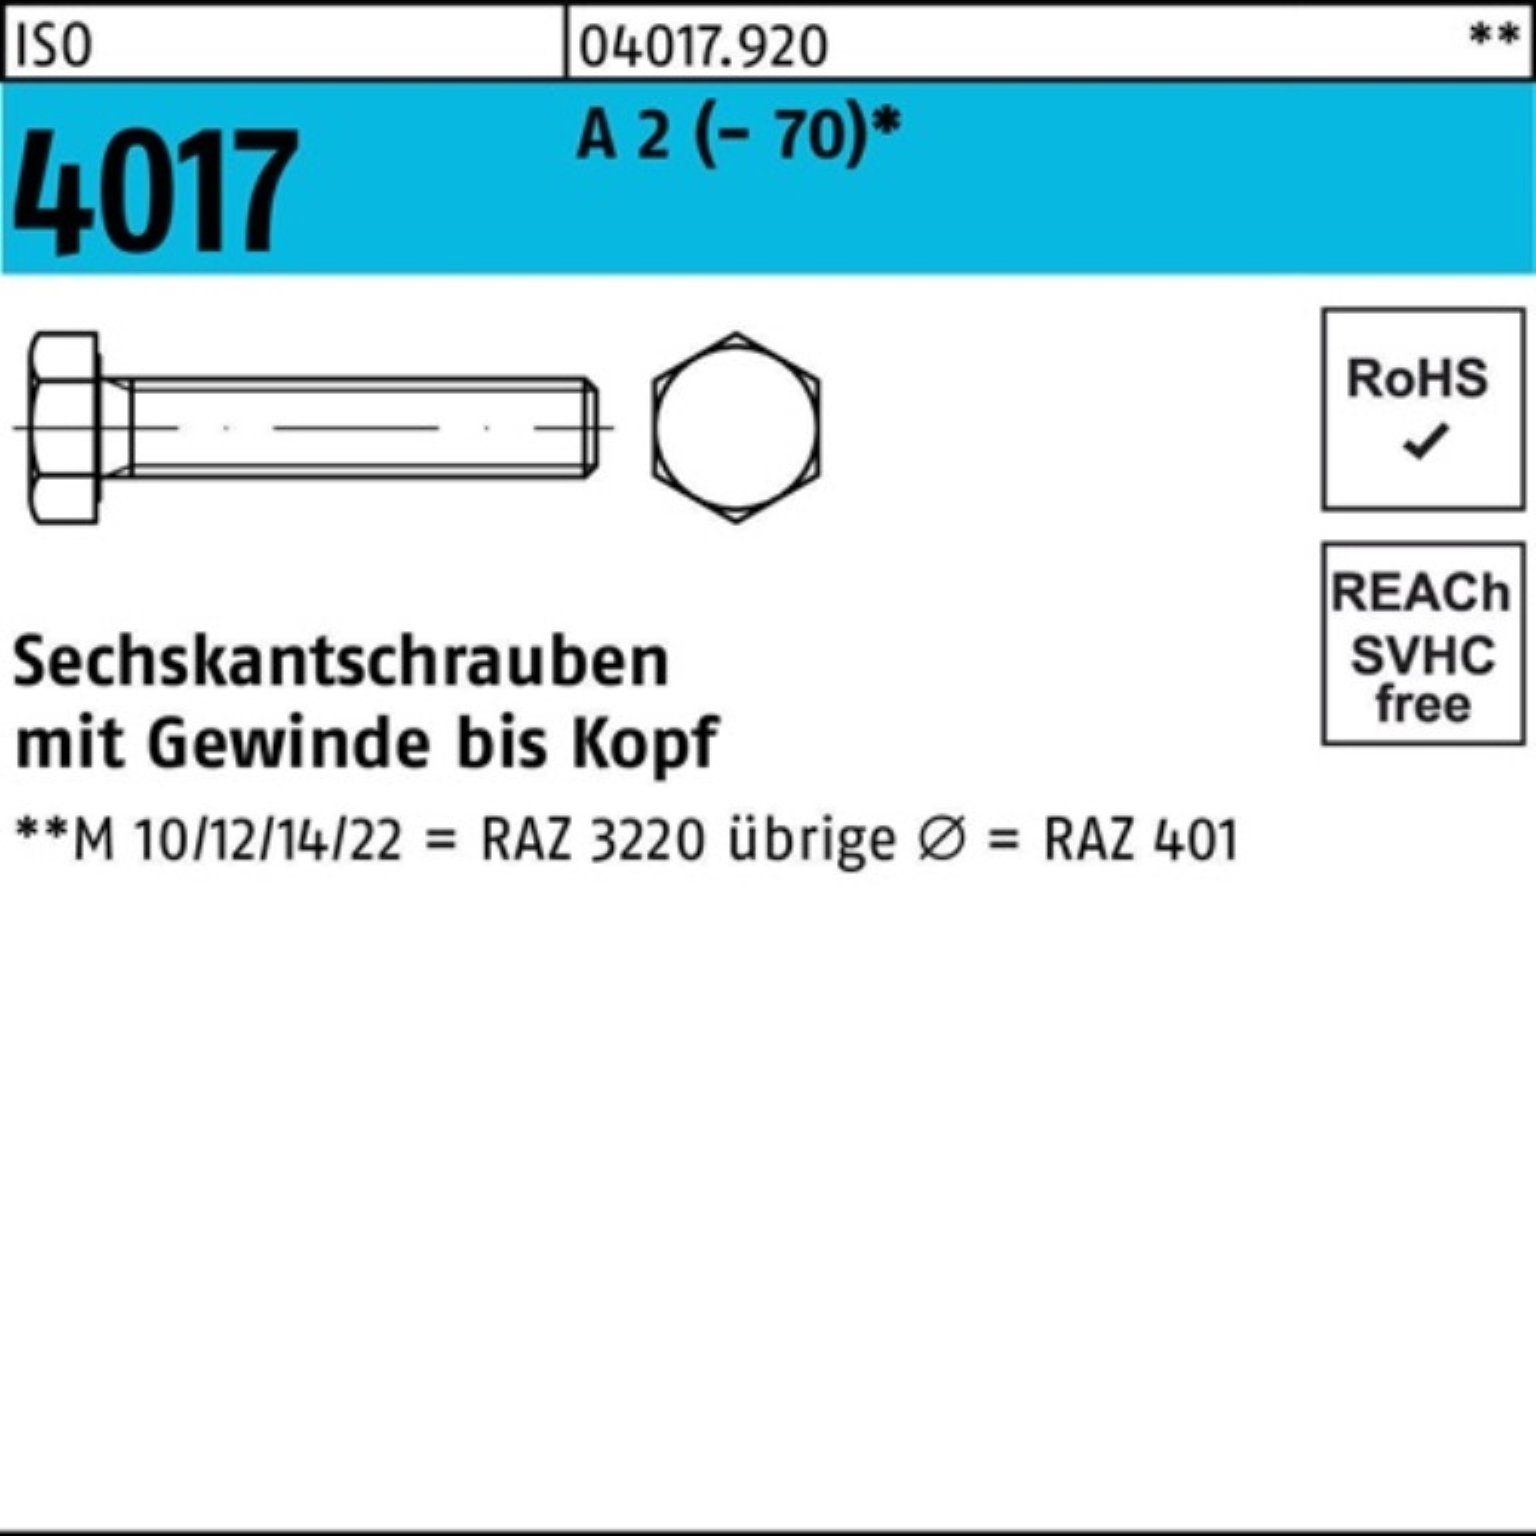 Stück 150 4017 ISO Bufab Pack VG (70) 1 A Sechskantschraube Sechskantschraube 100er 2 M36x